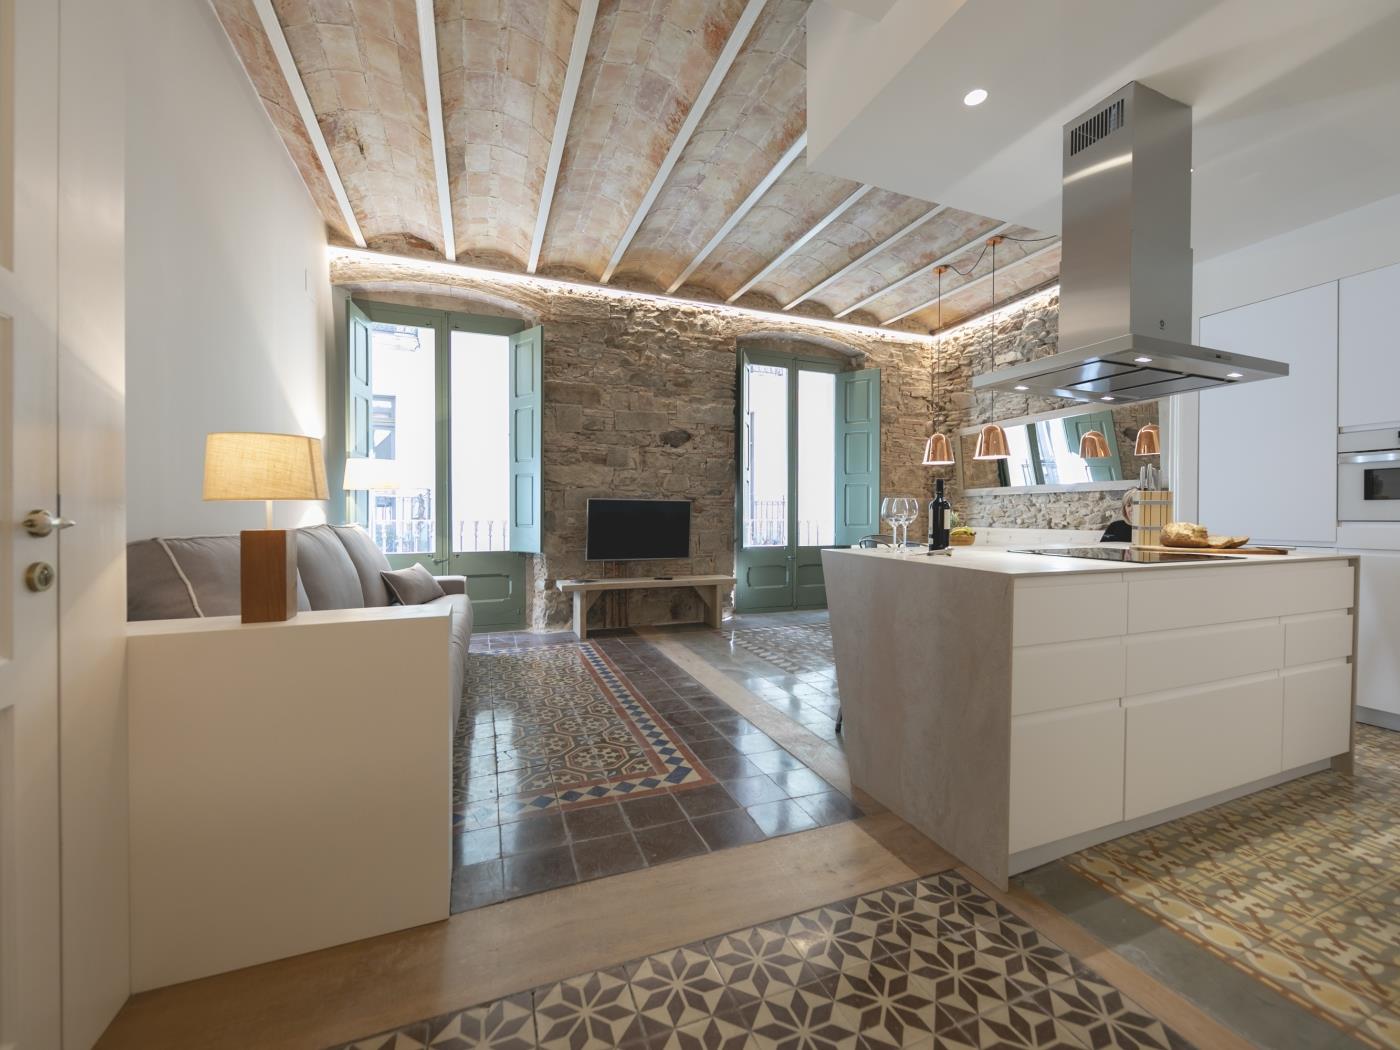 Mercaders 3 - Holiday apartment in Girona | Bravissimo in Girona